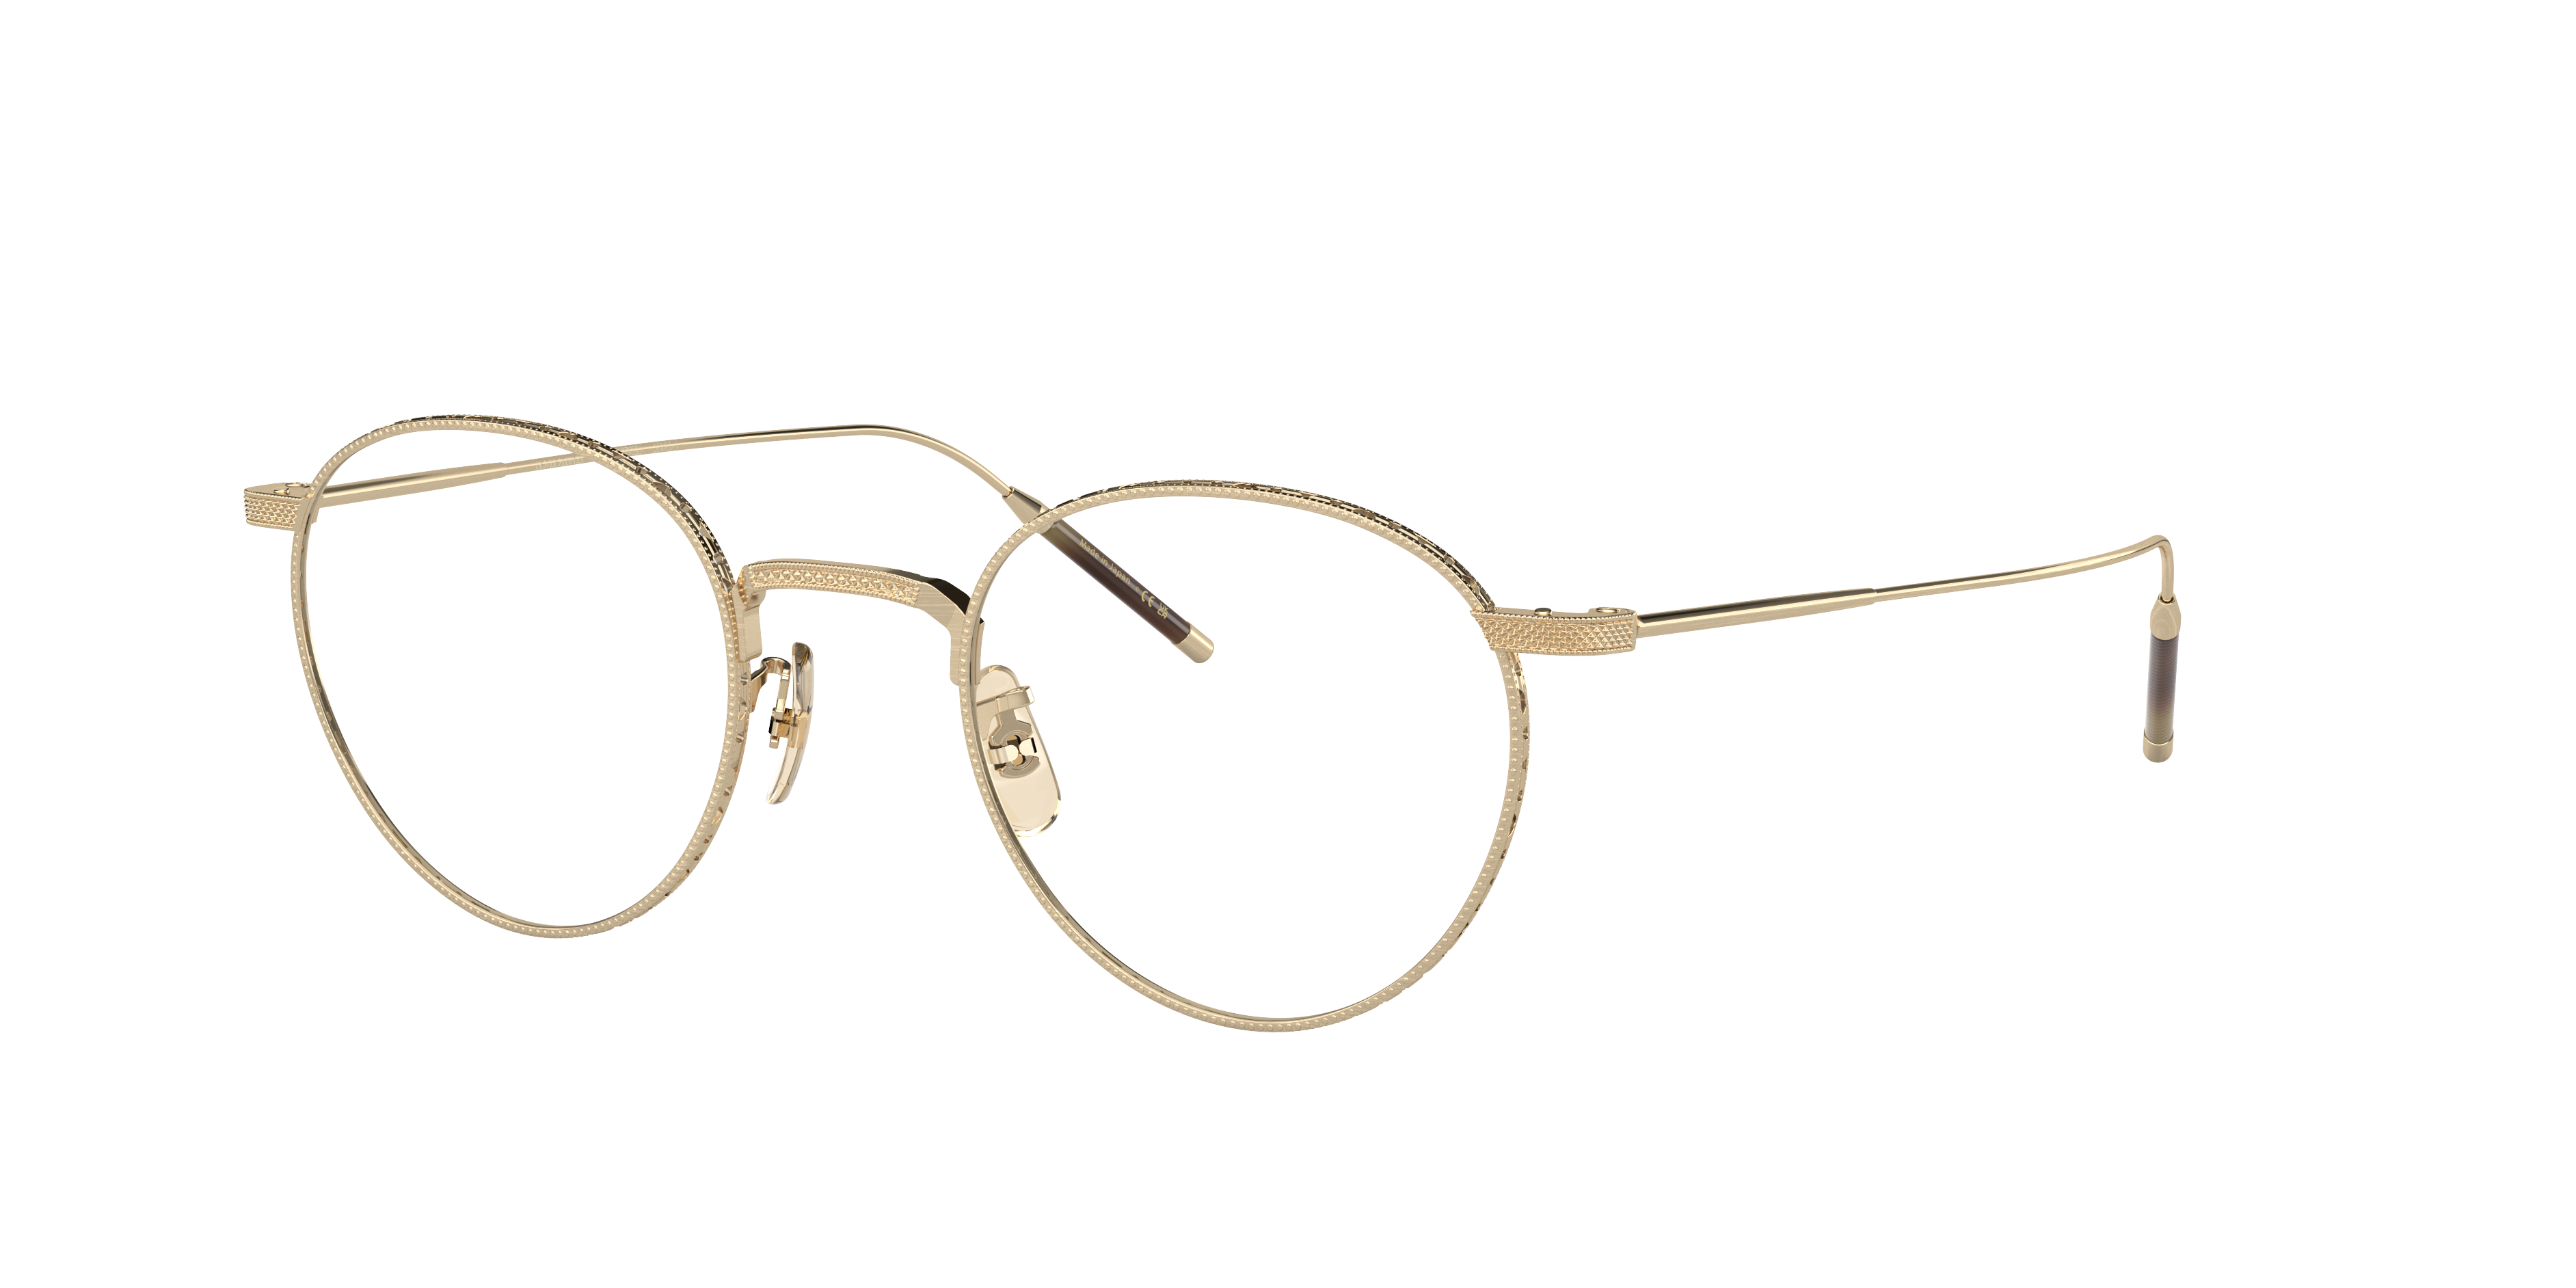 Eyeglasses OV1274T - Brushed Gold - Clear - チタニウム